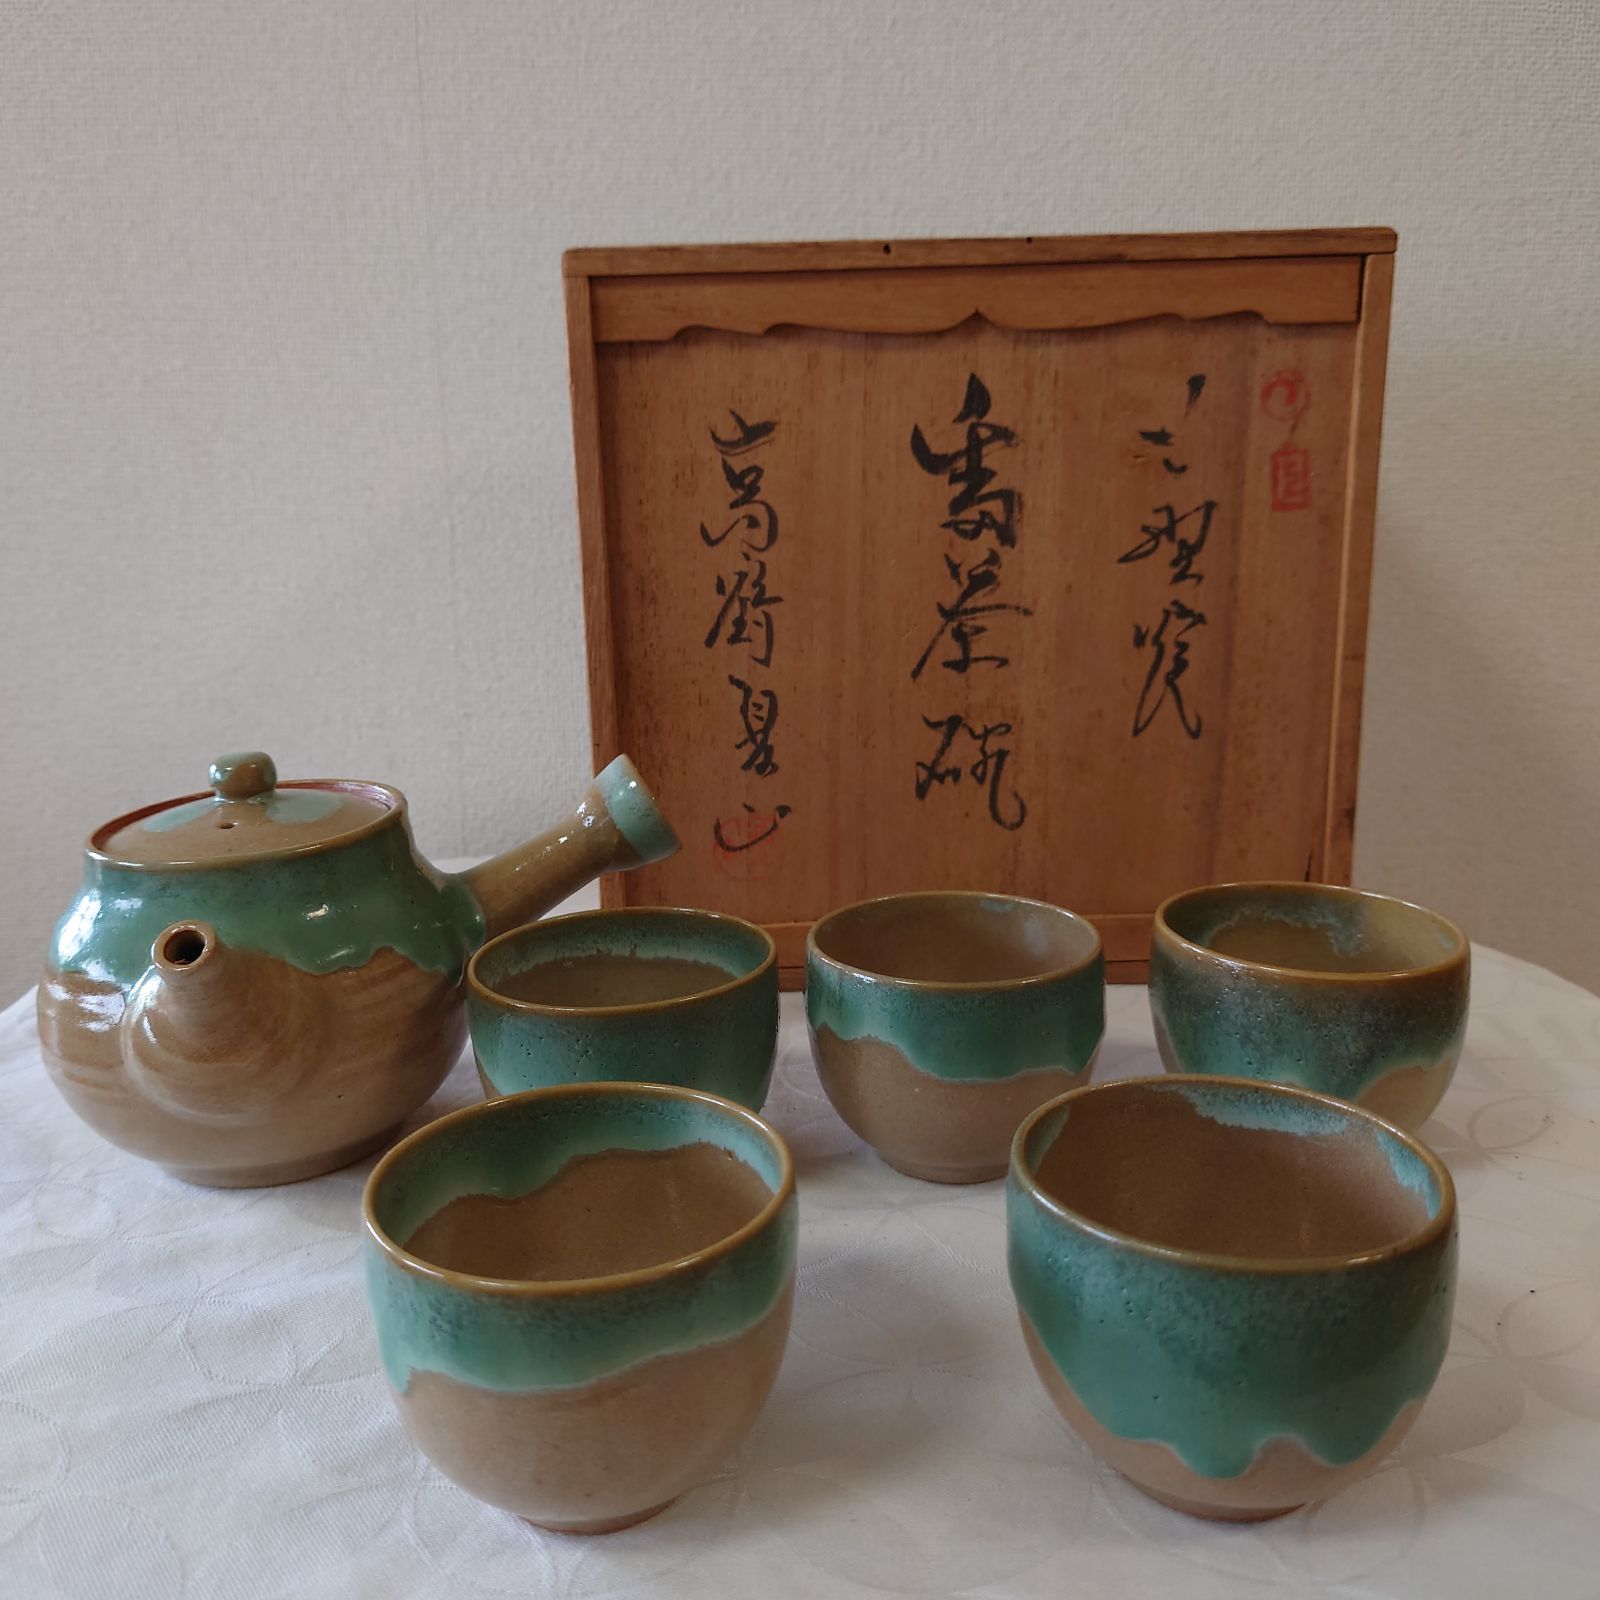 上野焼き 高鶴夏山作 煎茶セット 共箱 - 工芸品